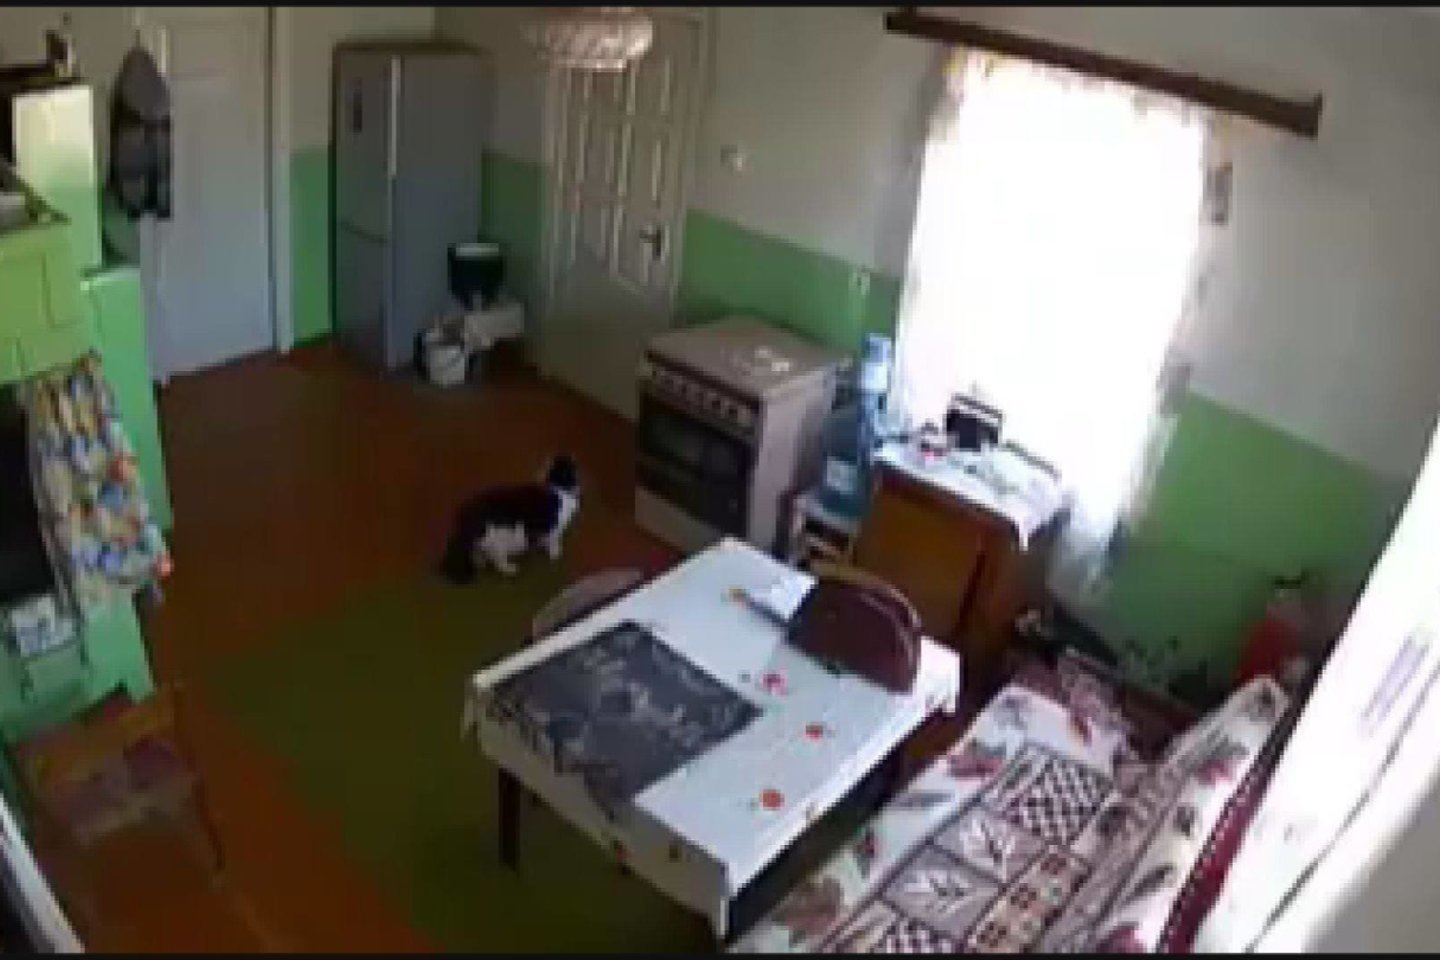  Sukčių sučiupti padėjo sučiupti senolės namuose Kėdainių rajone įrengtos vaizdo kameros.<br> "Stop" kadras.